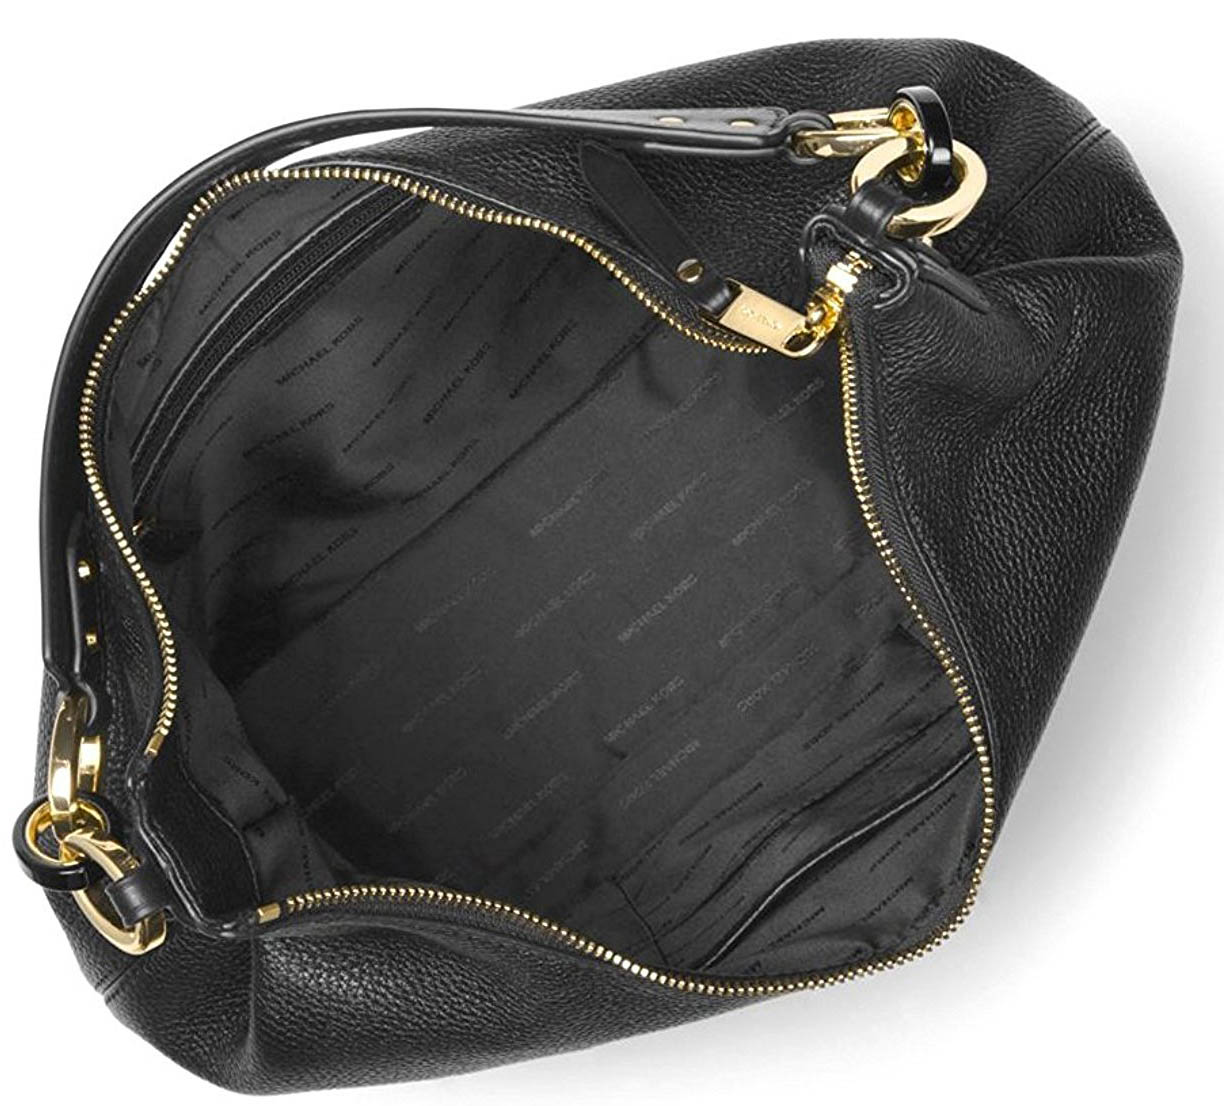 Michael Kors Isabella Large Convertible Leather Shoulder Bag Black # 38T7GIRL3L